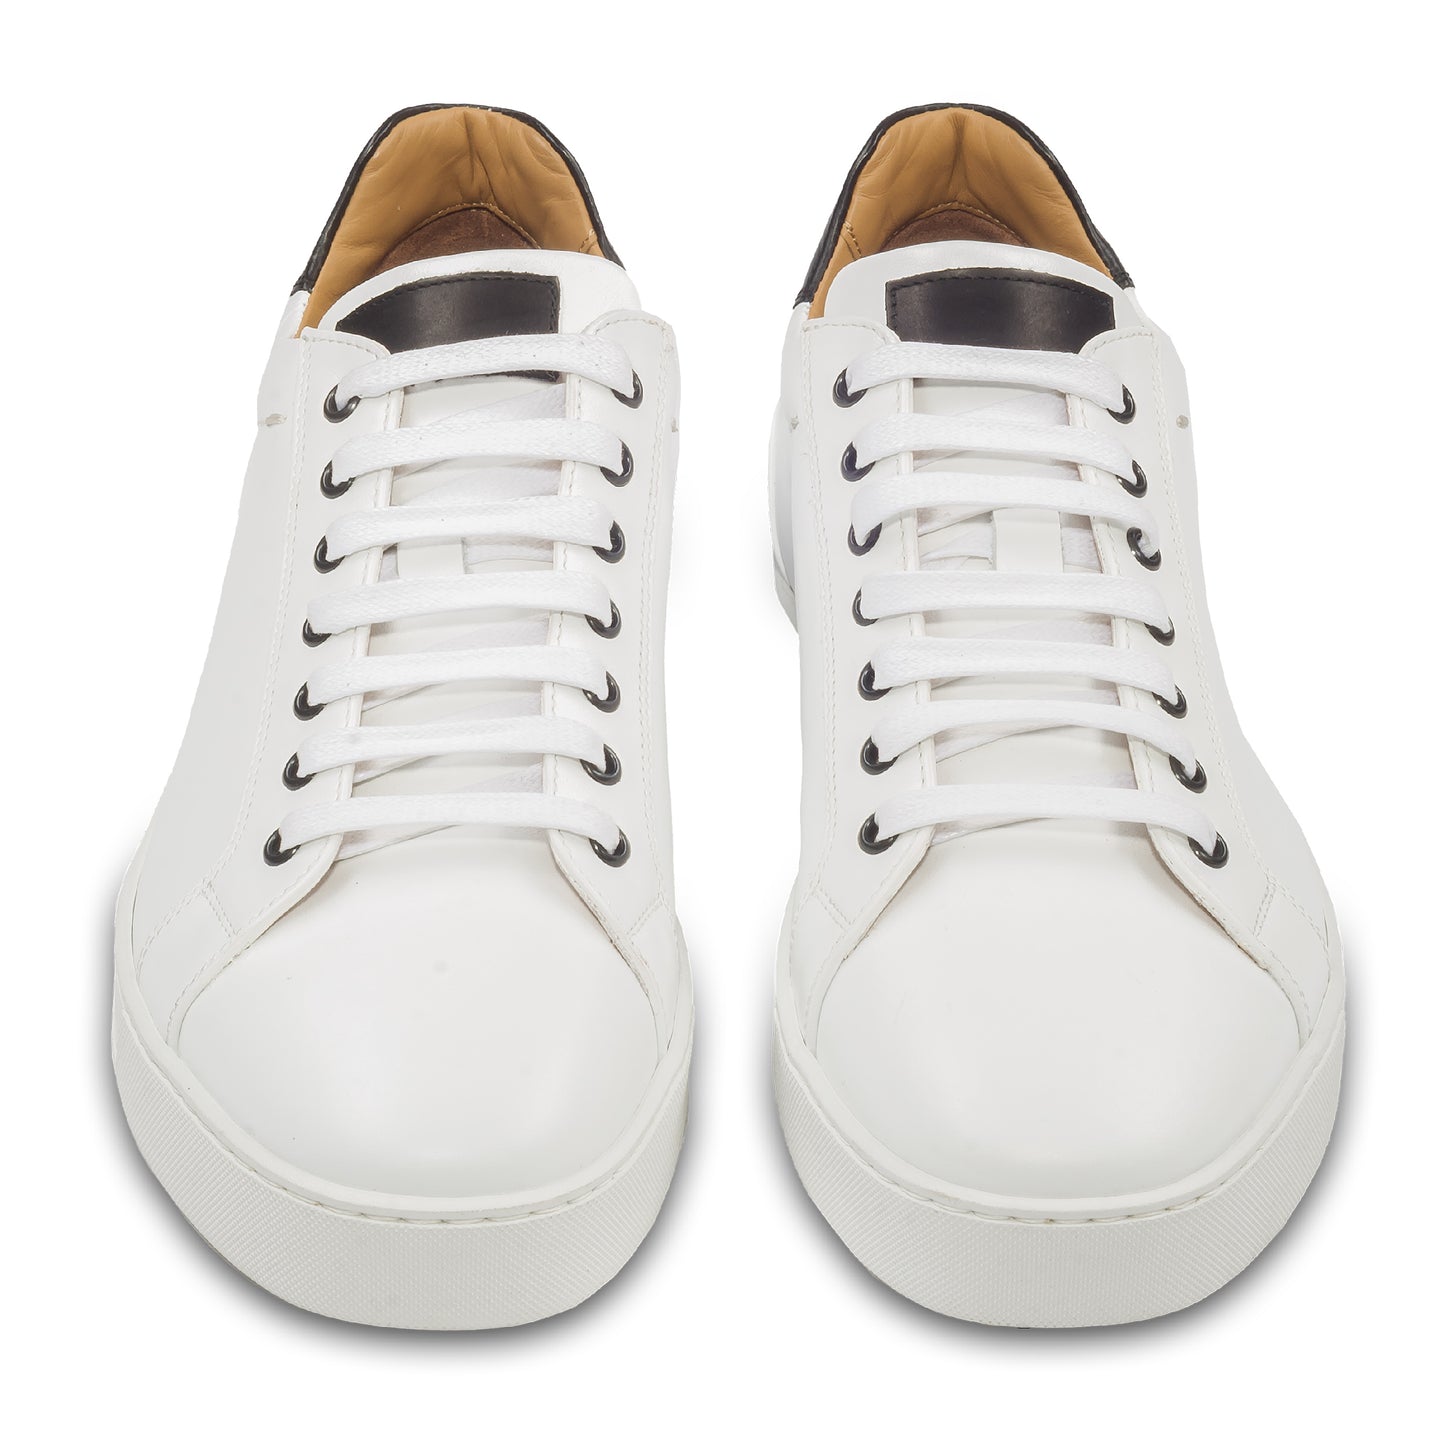 Triverflight – Italienische Herren-Sneaker in weiß mit schwarzer Ferse. Aus Kalbsleder handgefertigt. Paarweise Ansicht von vorne.